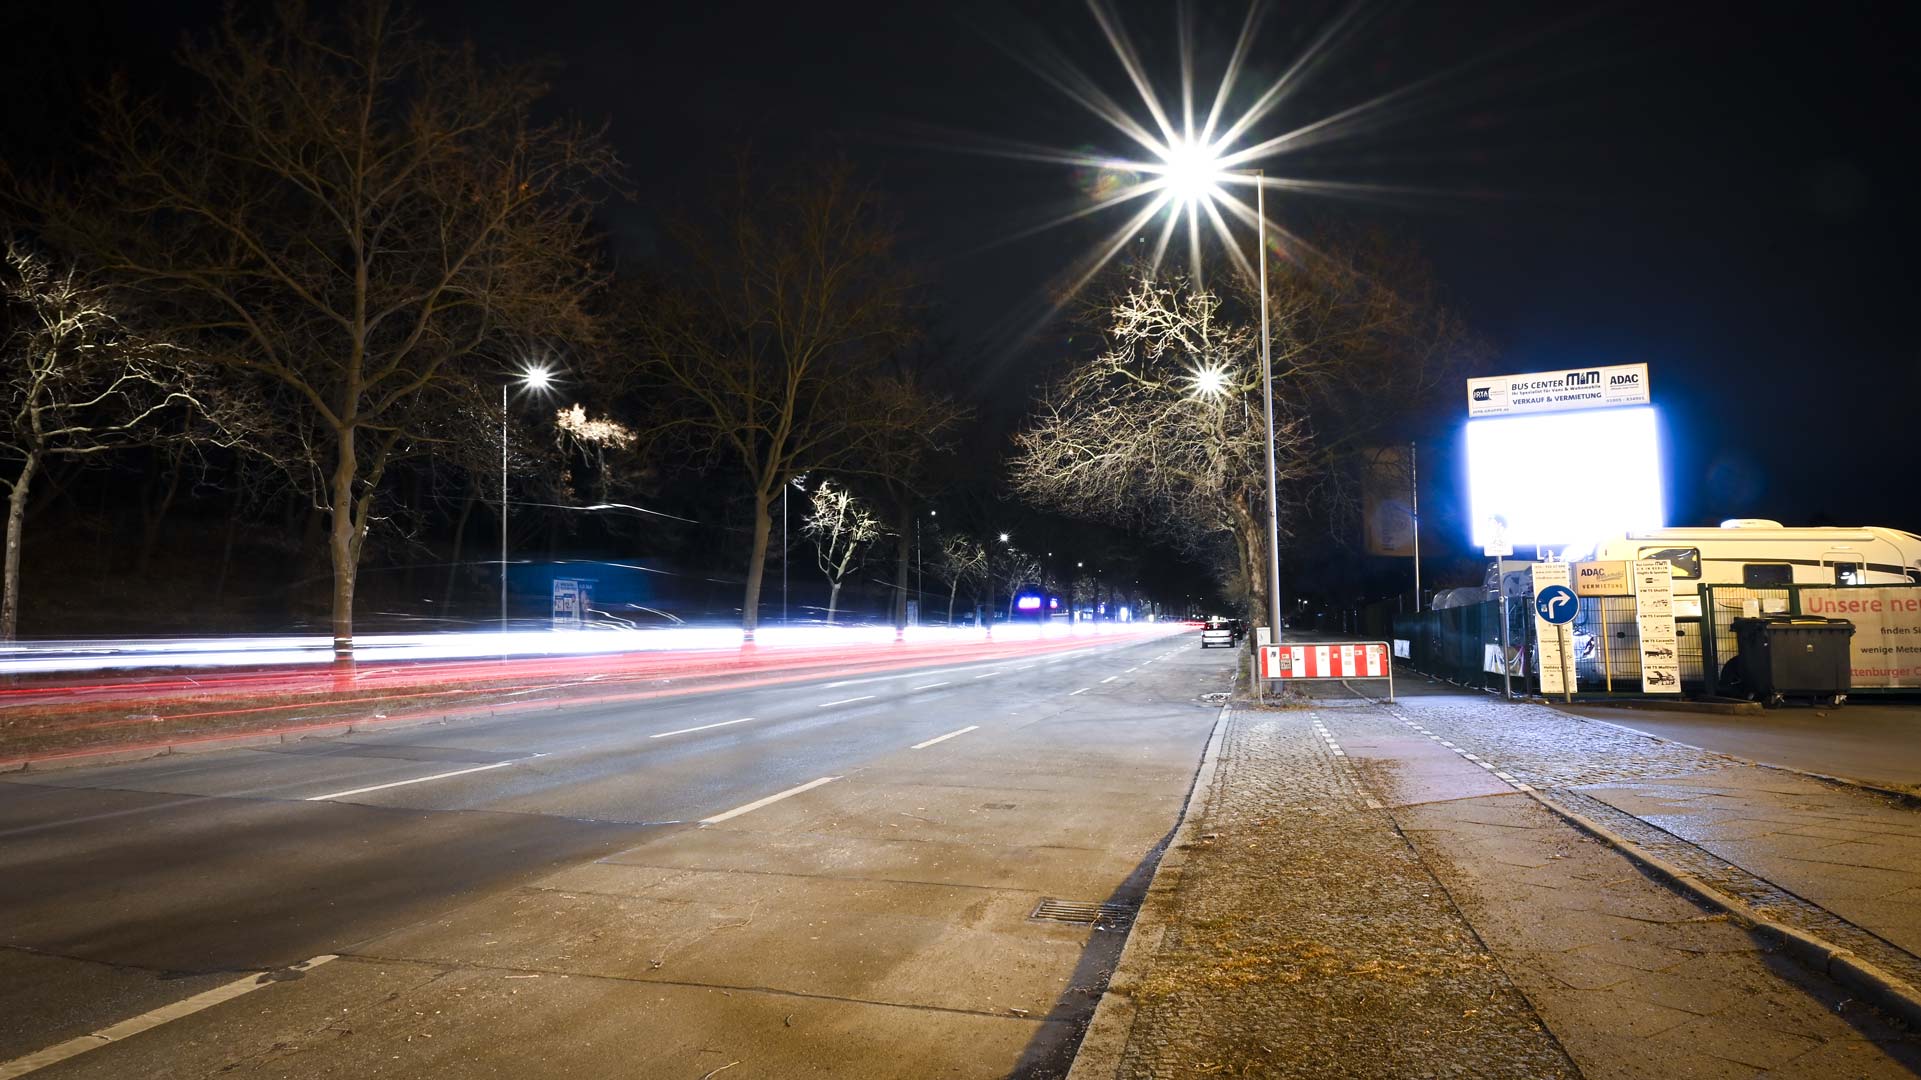 HD Berlin LED Werbefläche mieten in der Charlottenburger Chaussee 47 Berlin, LED Boards mieten Berlin